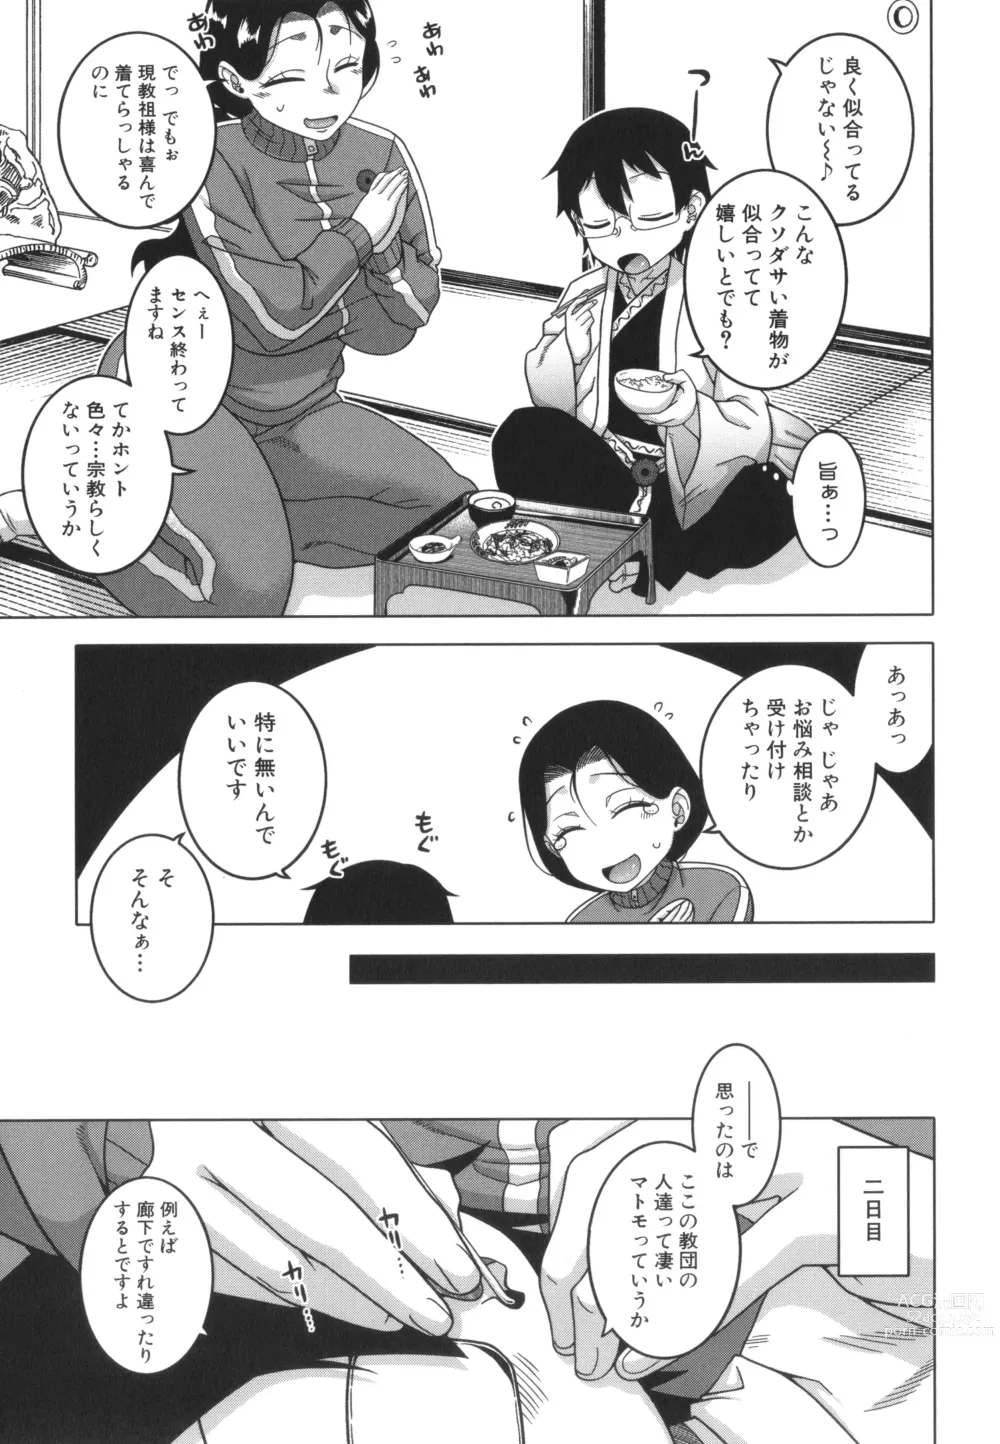 Page 14 of manga Kami-sama no Tsukurikata